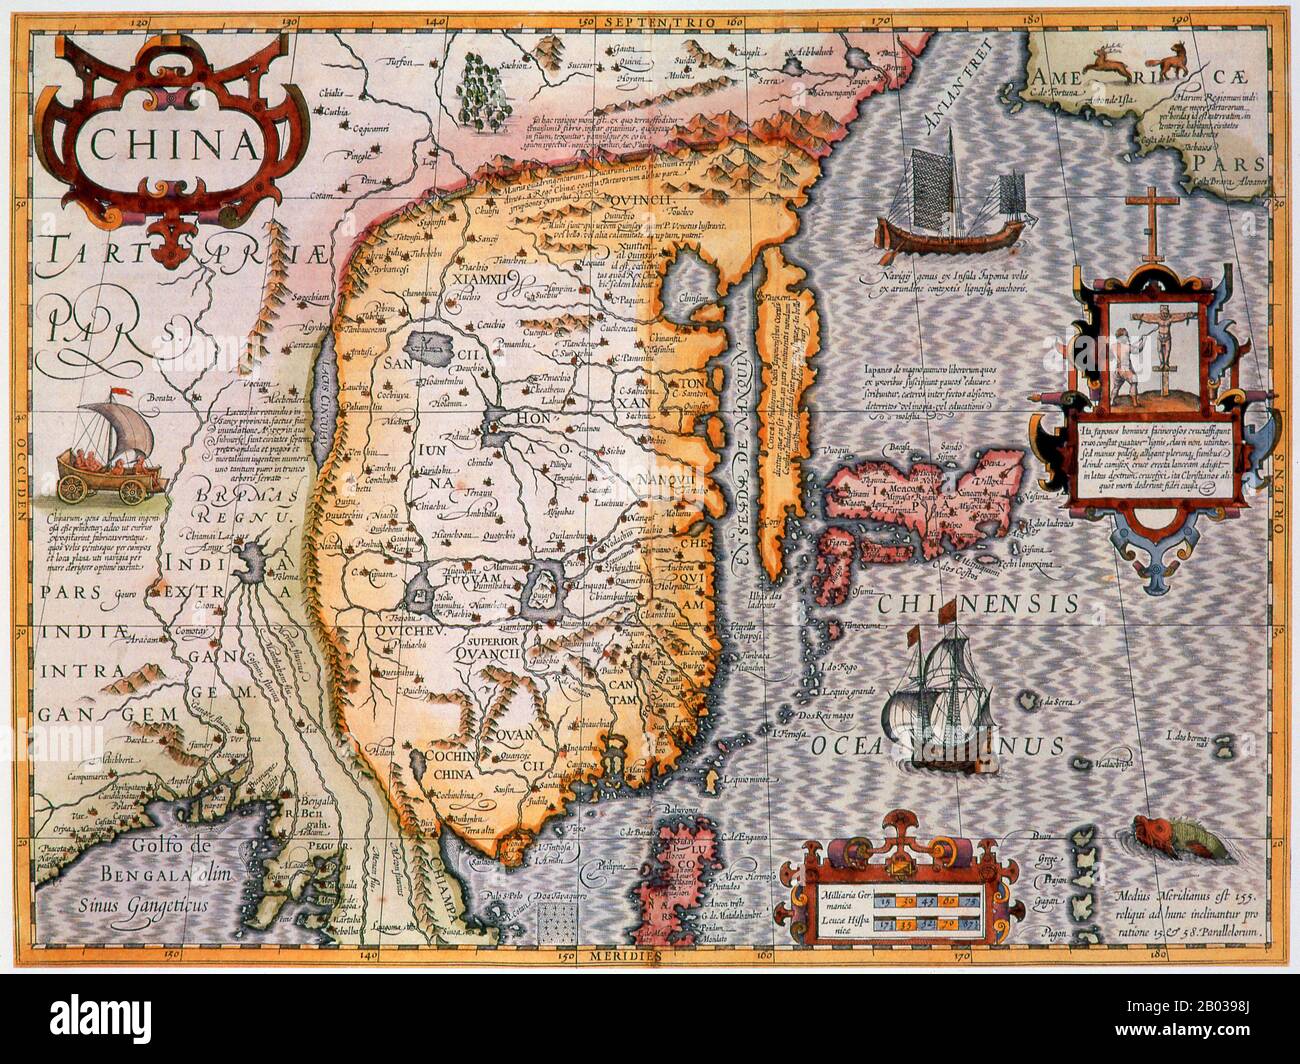 Gerardus Mercator, ein flämischer Deutscher (5. März 1512 - 2. Dezember 1594) war ein Kartograf, der dafür bekannt war, eine Weltkarte auf der Grundlage einer neuen Projektion zu erstellen, die Segelkurse von konstantem Lager als gerade Linien darstellte - eine Innovation, die noch in nautischen Karten verwendet wird, die für die Navigation verwendet werden. Jodocus Hondius (niederländischer Name: Joost de Hondt) (1563 - 1612) war ein flämischer Graveur und Kartograf. Er half, Amsterdam als Zentrum der Kartografie in Europa im 17. Jahrhundert zu etablieren. Stockfoto